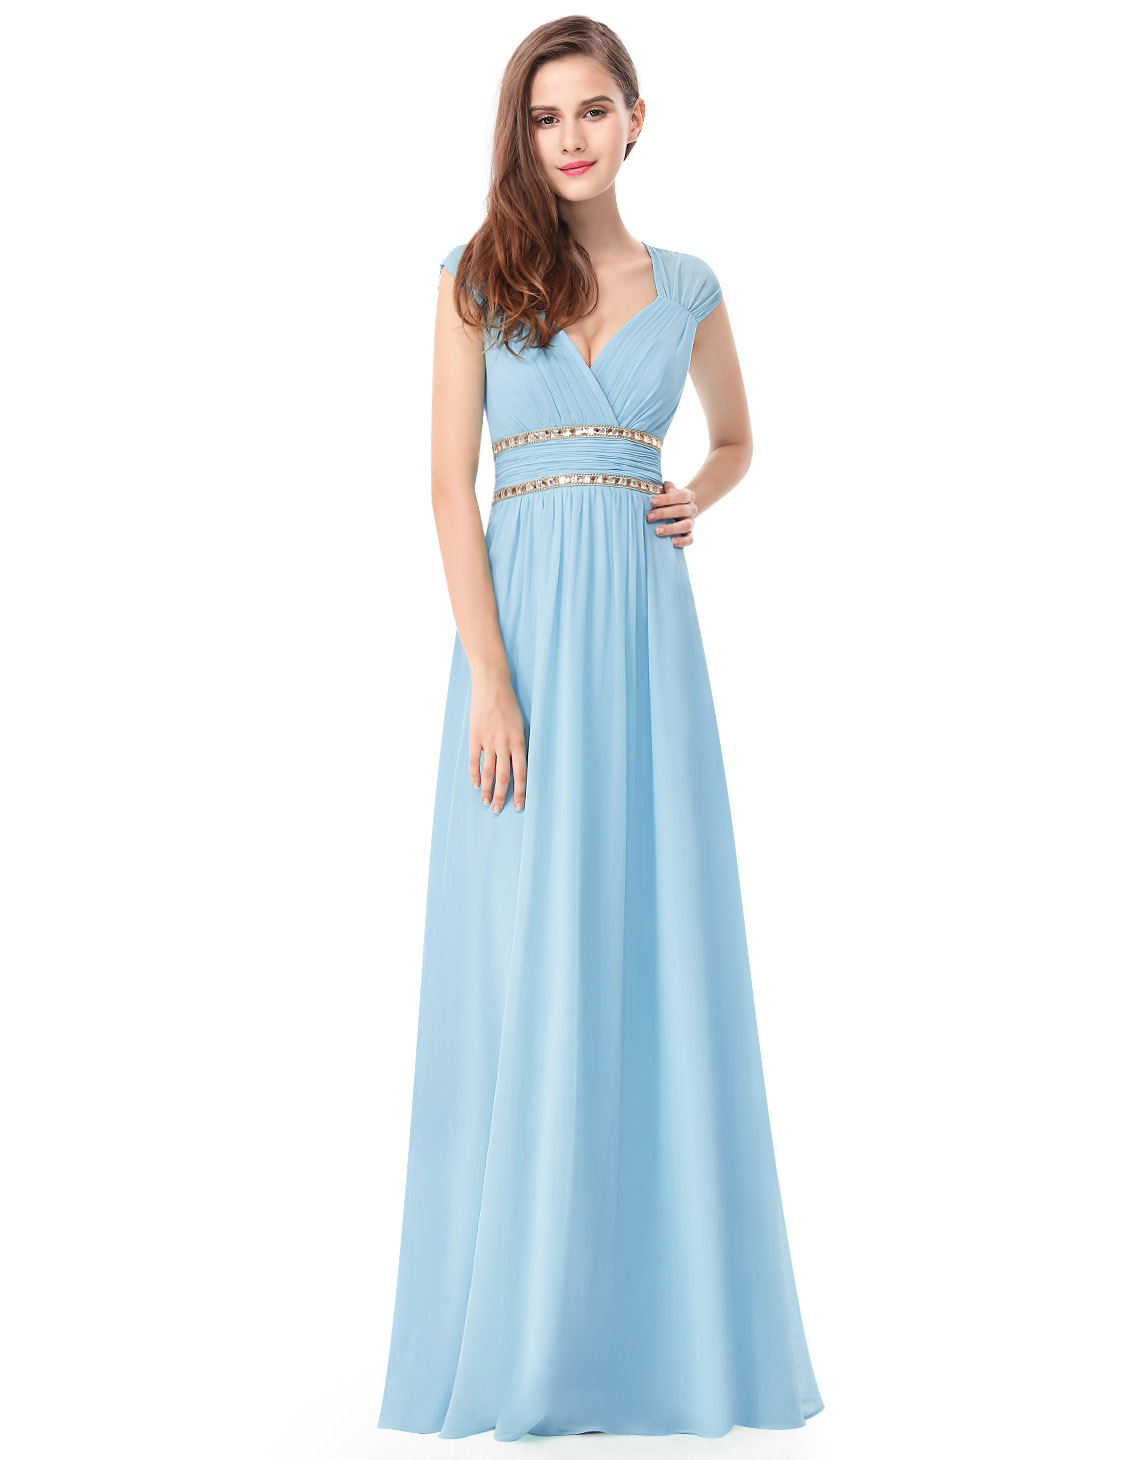 Нежное платье в греческом стиле голубого цвета